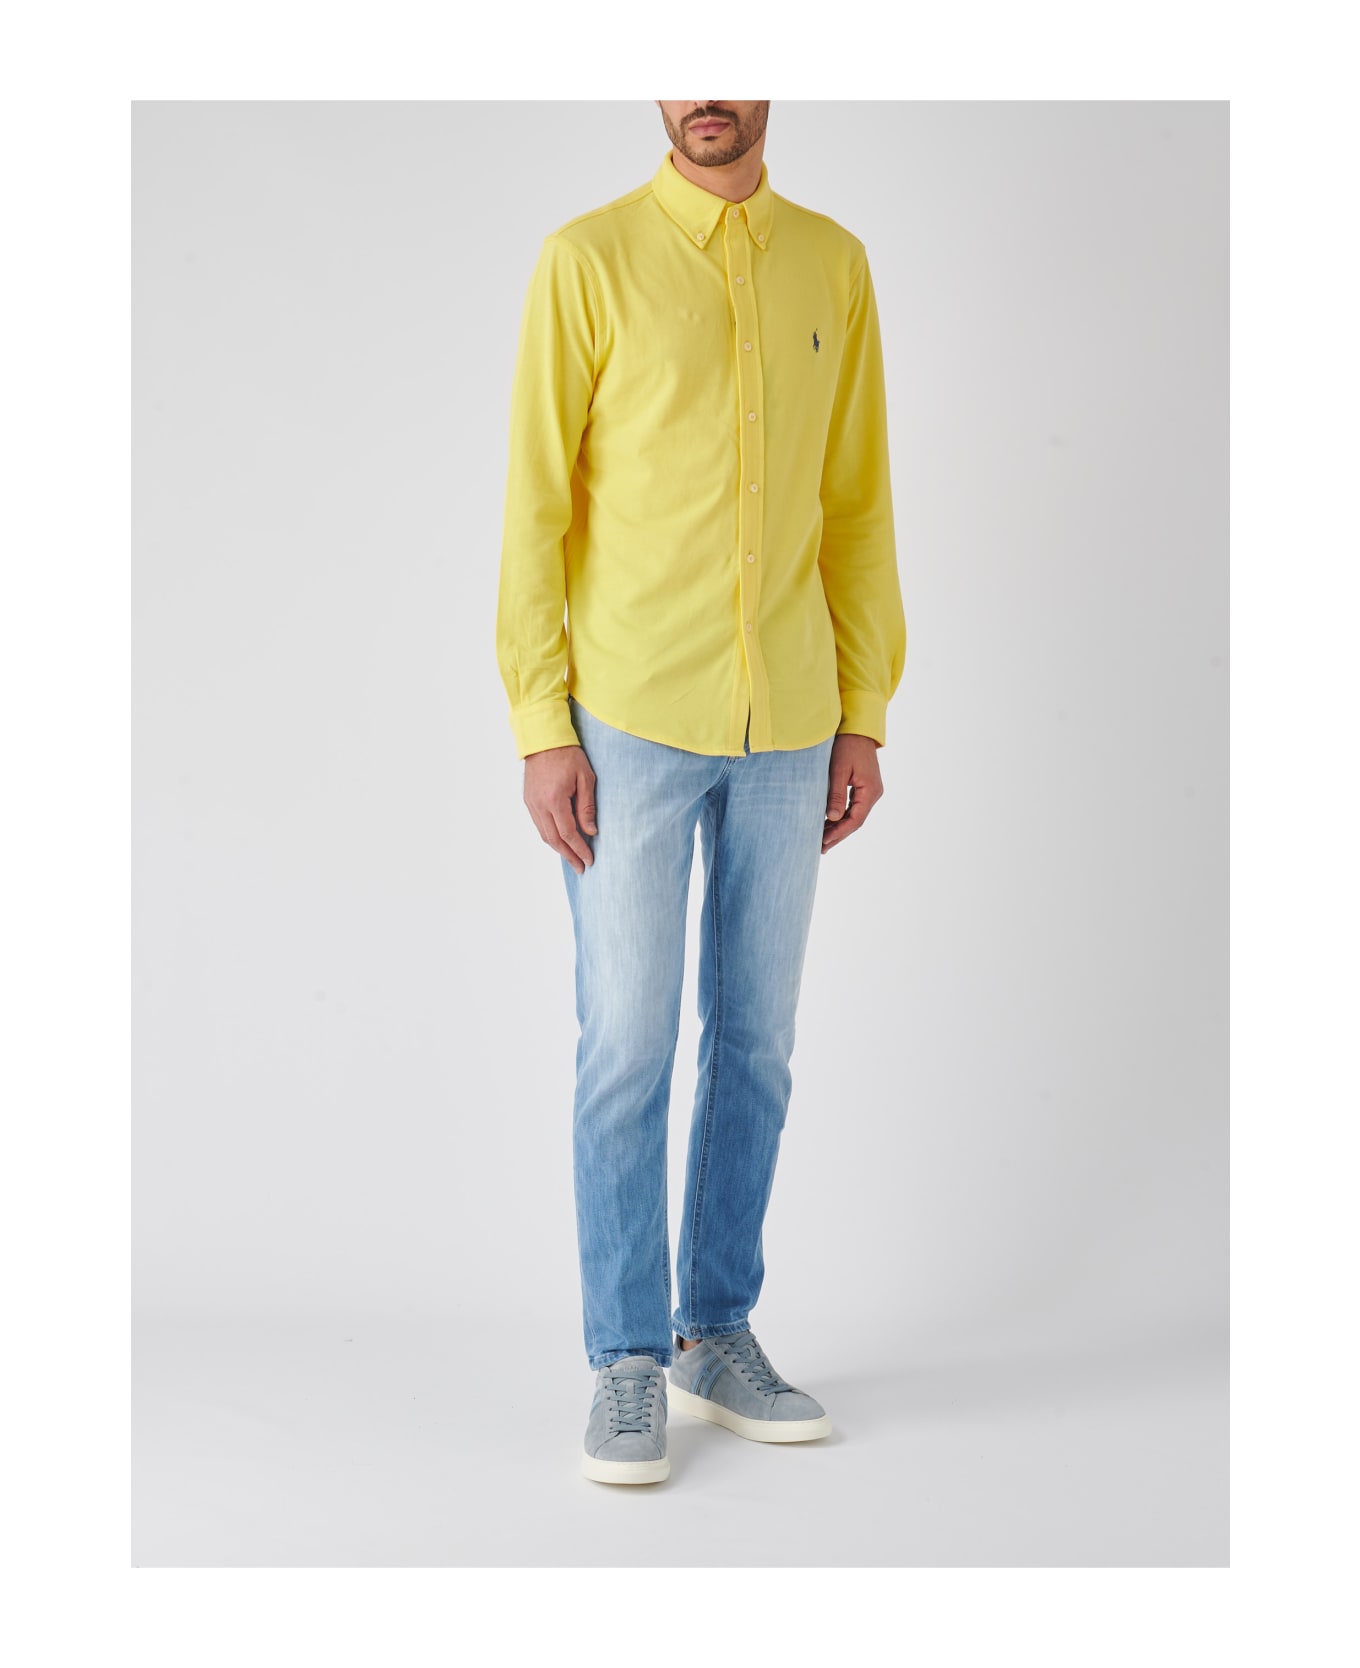 Polo Ralph Lauren Long Sleeve Sport Shirt Shirt - GIALLO シャツ